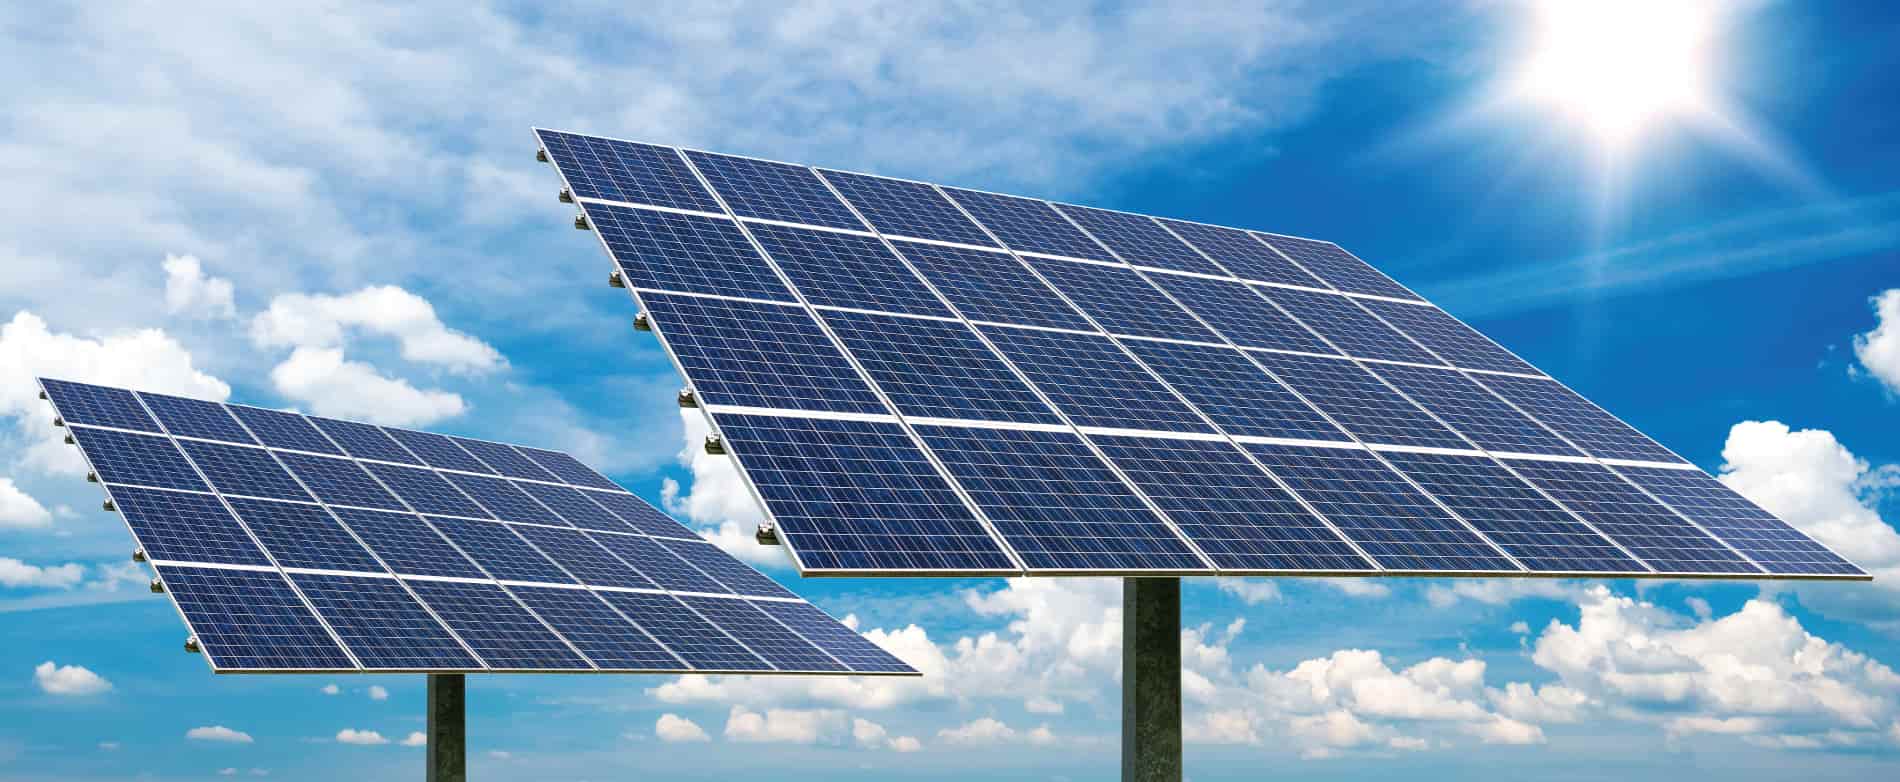 النشر دهان بارع  أنظمة الطاقة الشمسية المنزلية